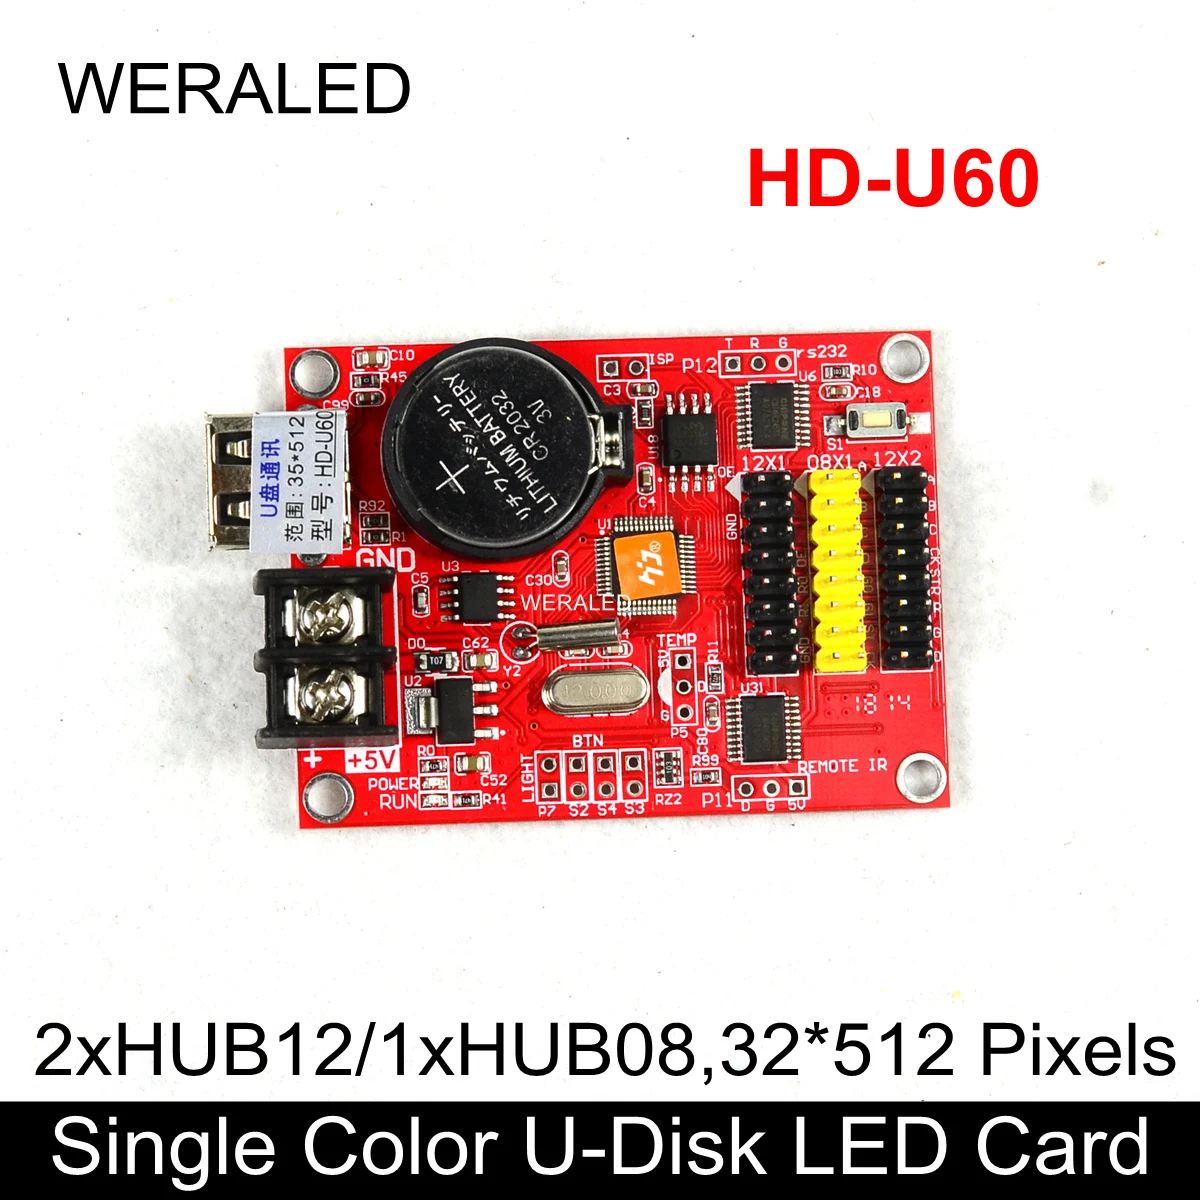 Huidu HD-U60 USB-Disc de Culoare Unică și Dublă de Culoare Scrolling Message Board Control cu LED-uri Carte de Munca pentru P10 Singură Culoare LED Module